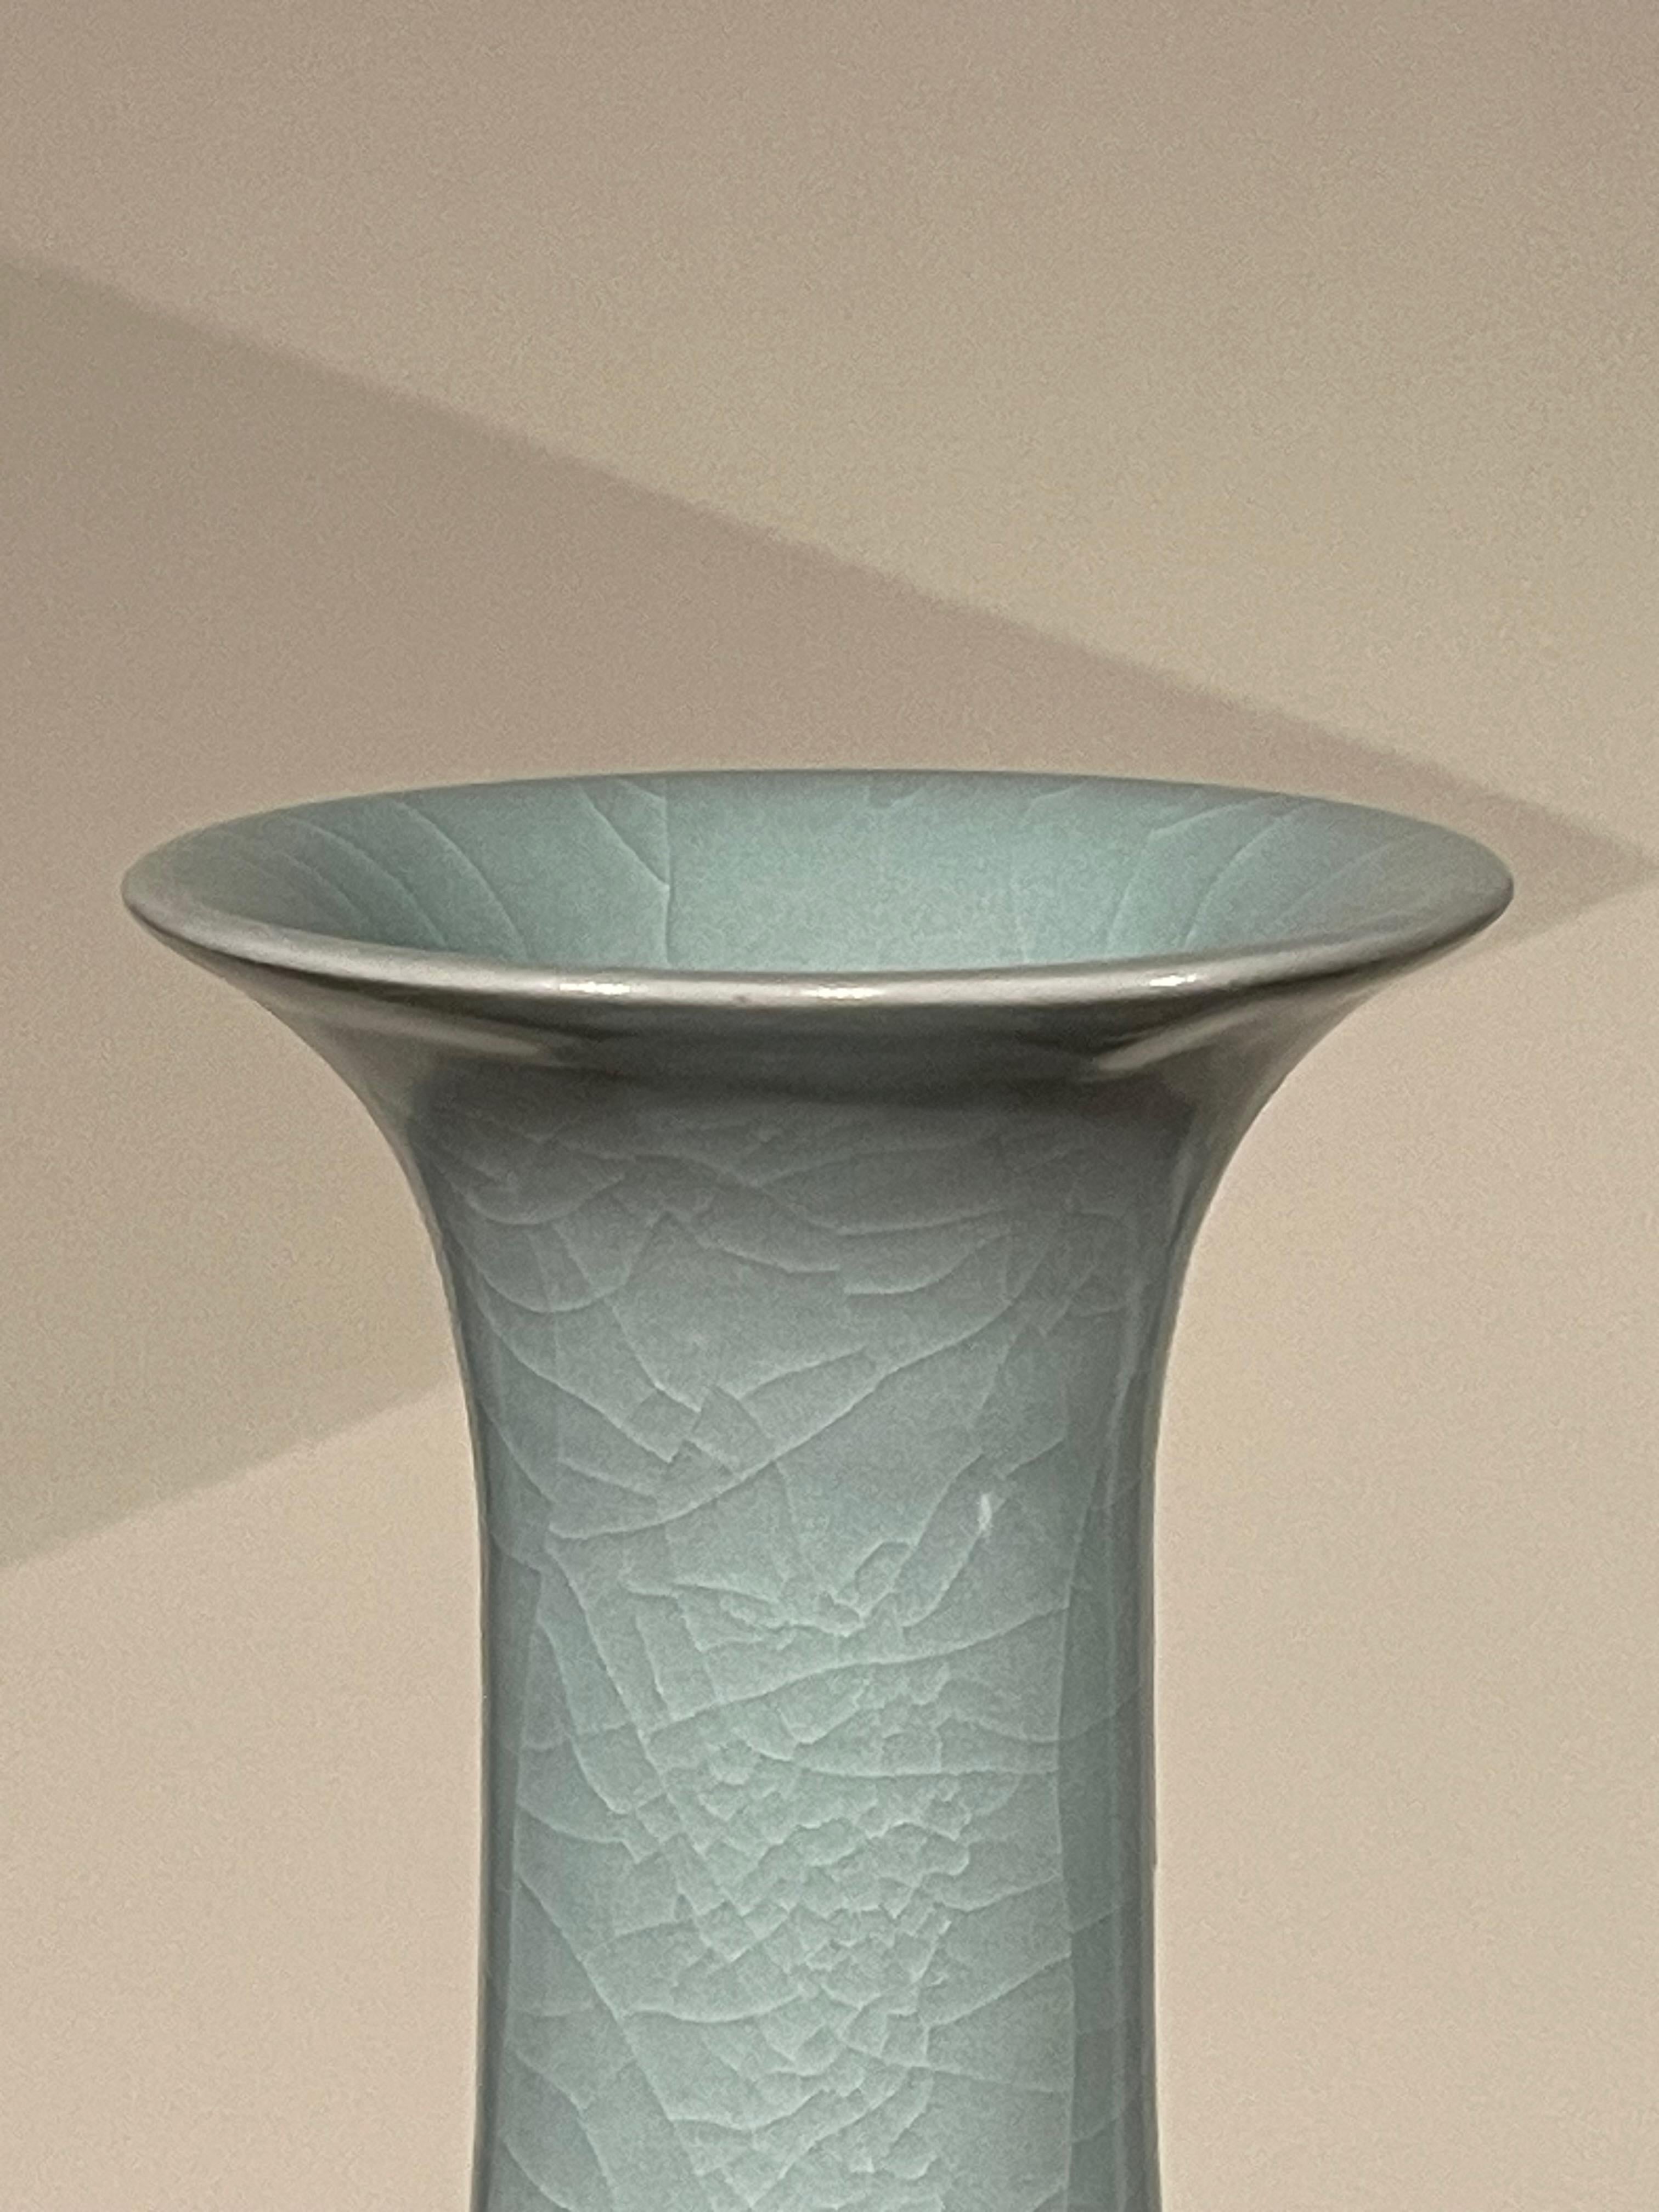 Vase contemporain chinois de couleur turquoise pâle.
Forme tulipe avec fond arrondi.
Une large collection est disponible avec des tailles et des formes variées.
Vendu à l'unité.
ARRIVÉE EN MARS